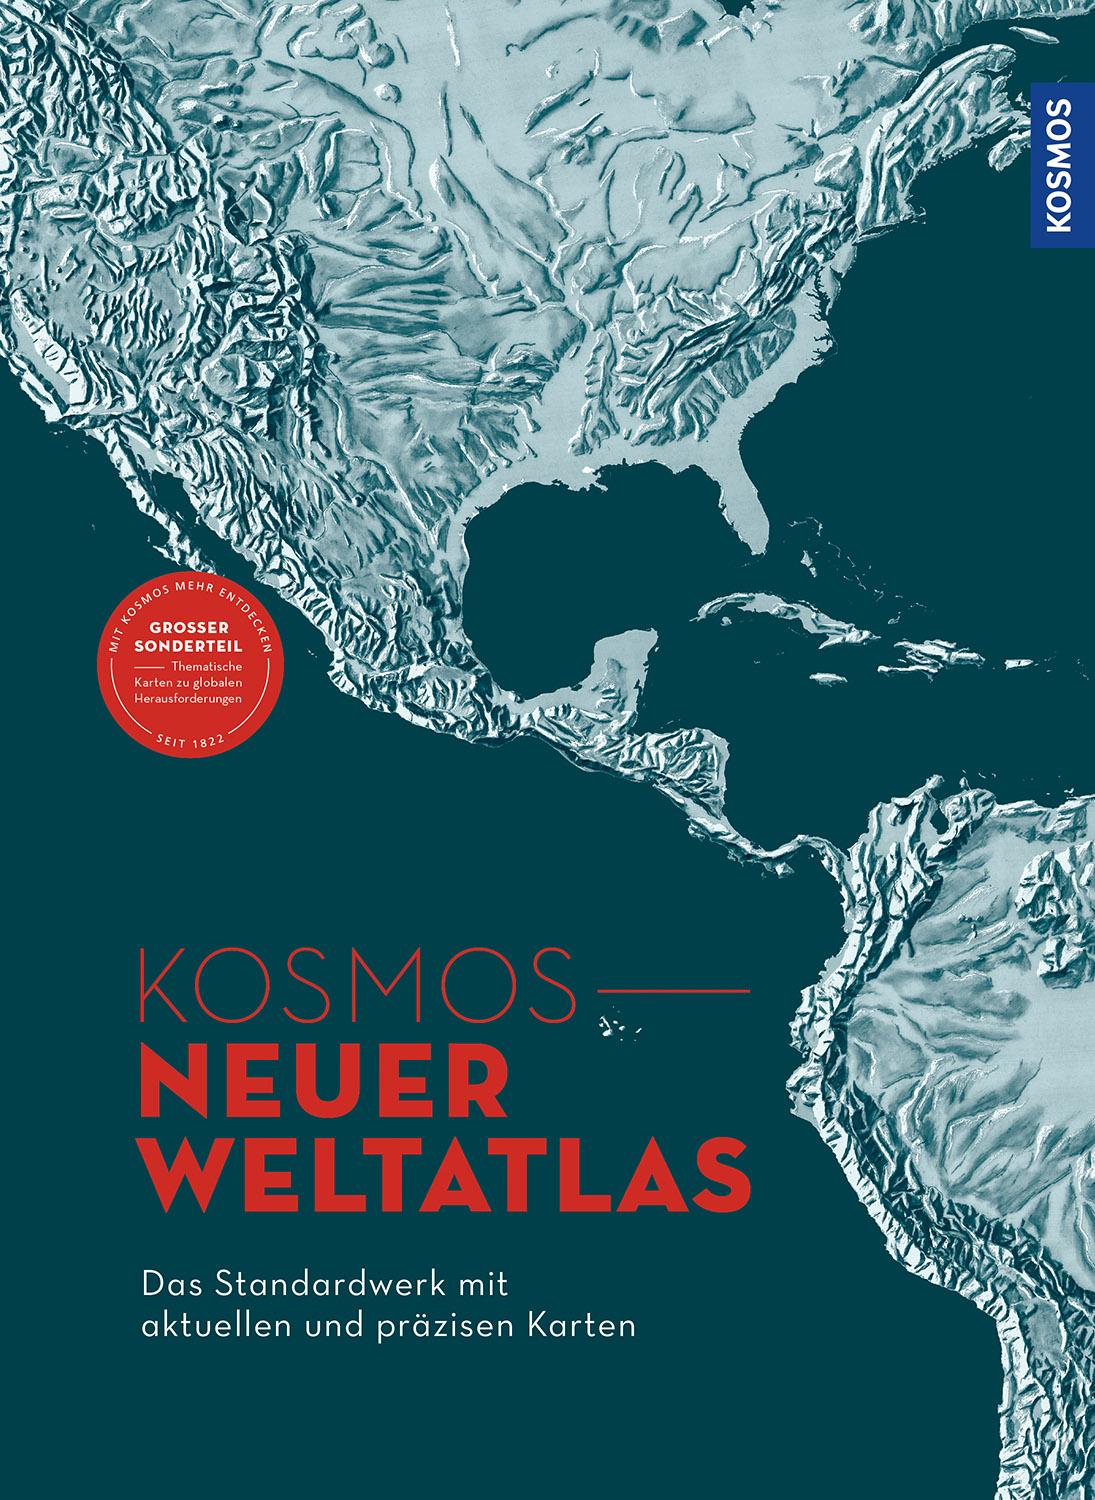 KOSMOS Neuer Weltatlas: Das Standardwerk mit aktuellen und präzisen Karten